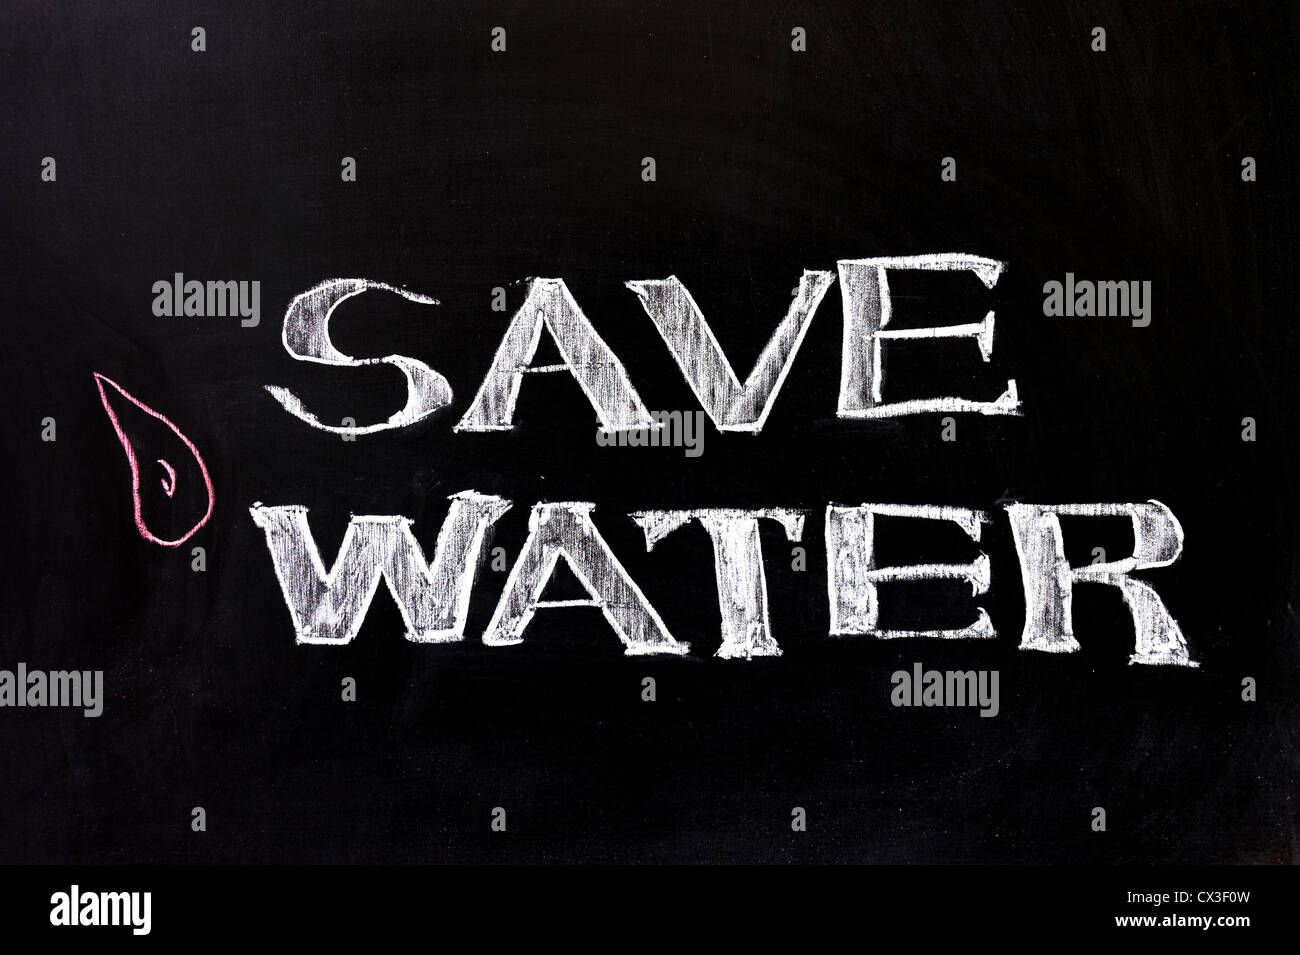 Dessin à la craie - concept d'économiser de l'eau Banque D'Images